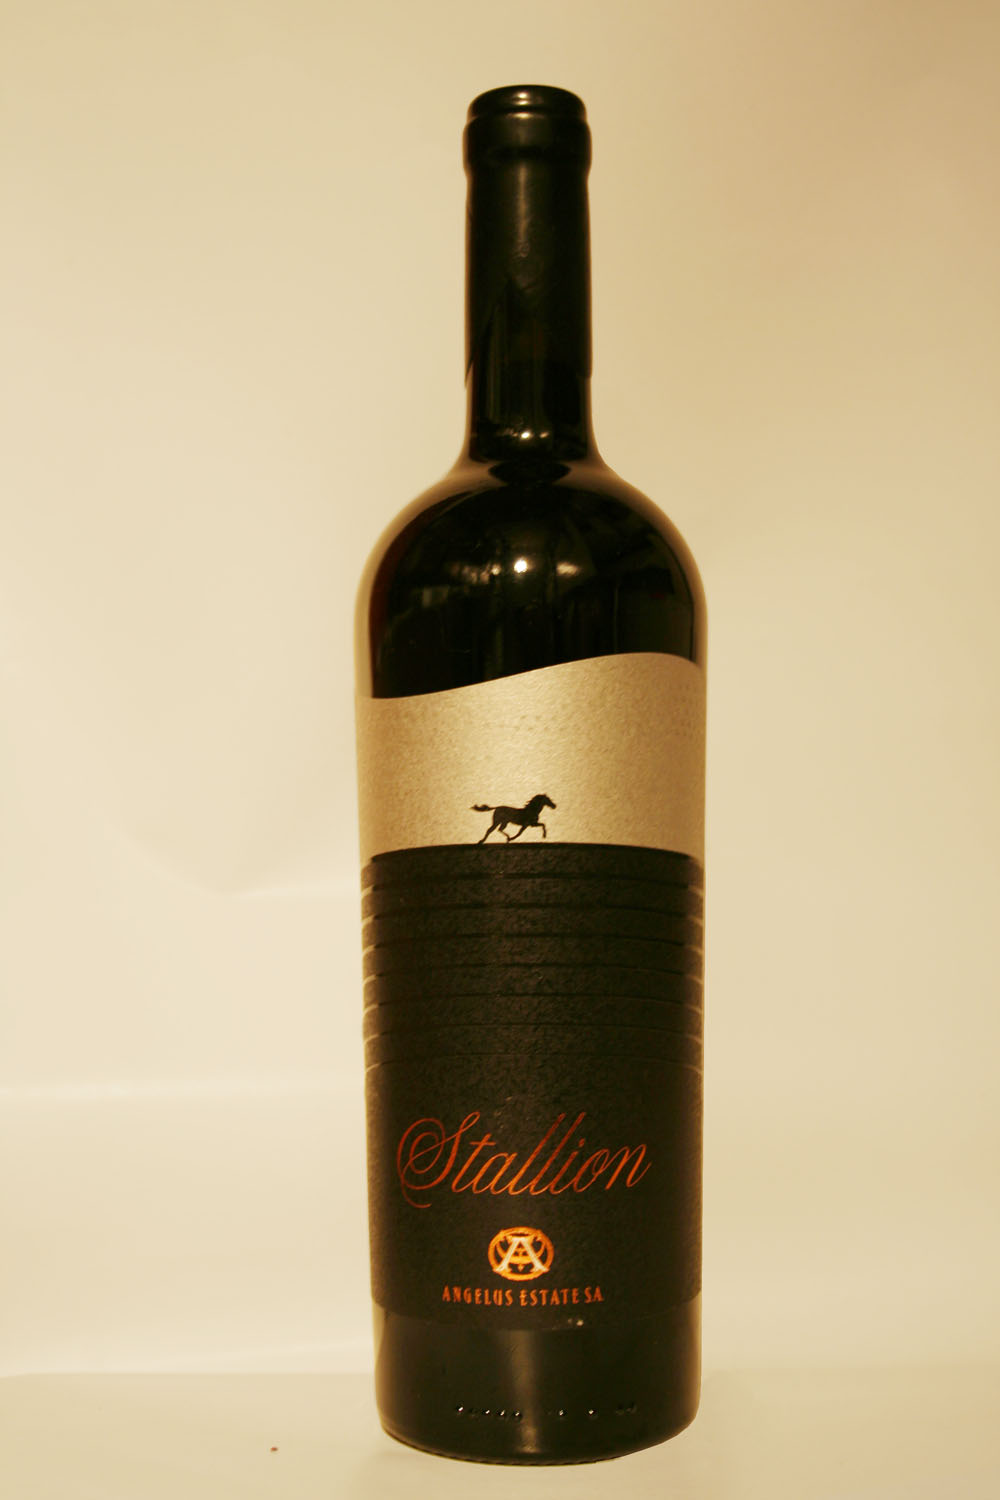 Stallion 2011